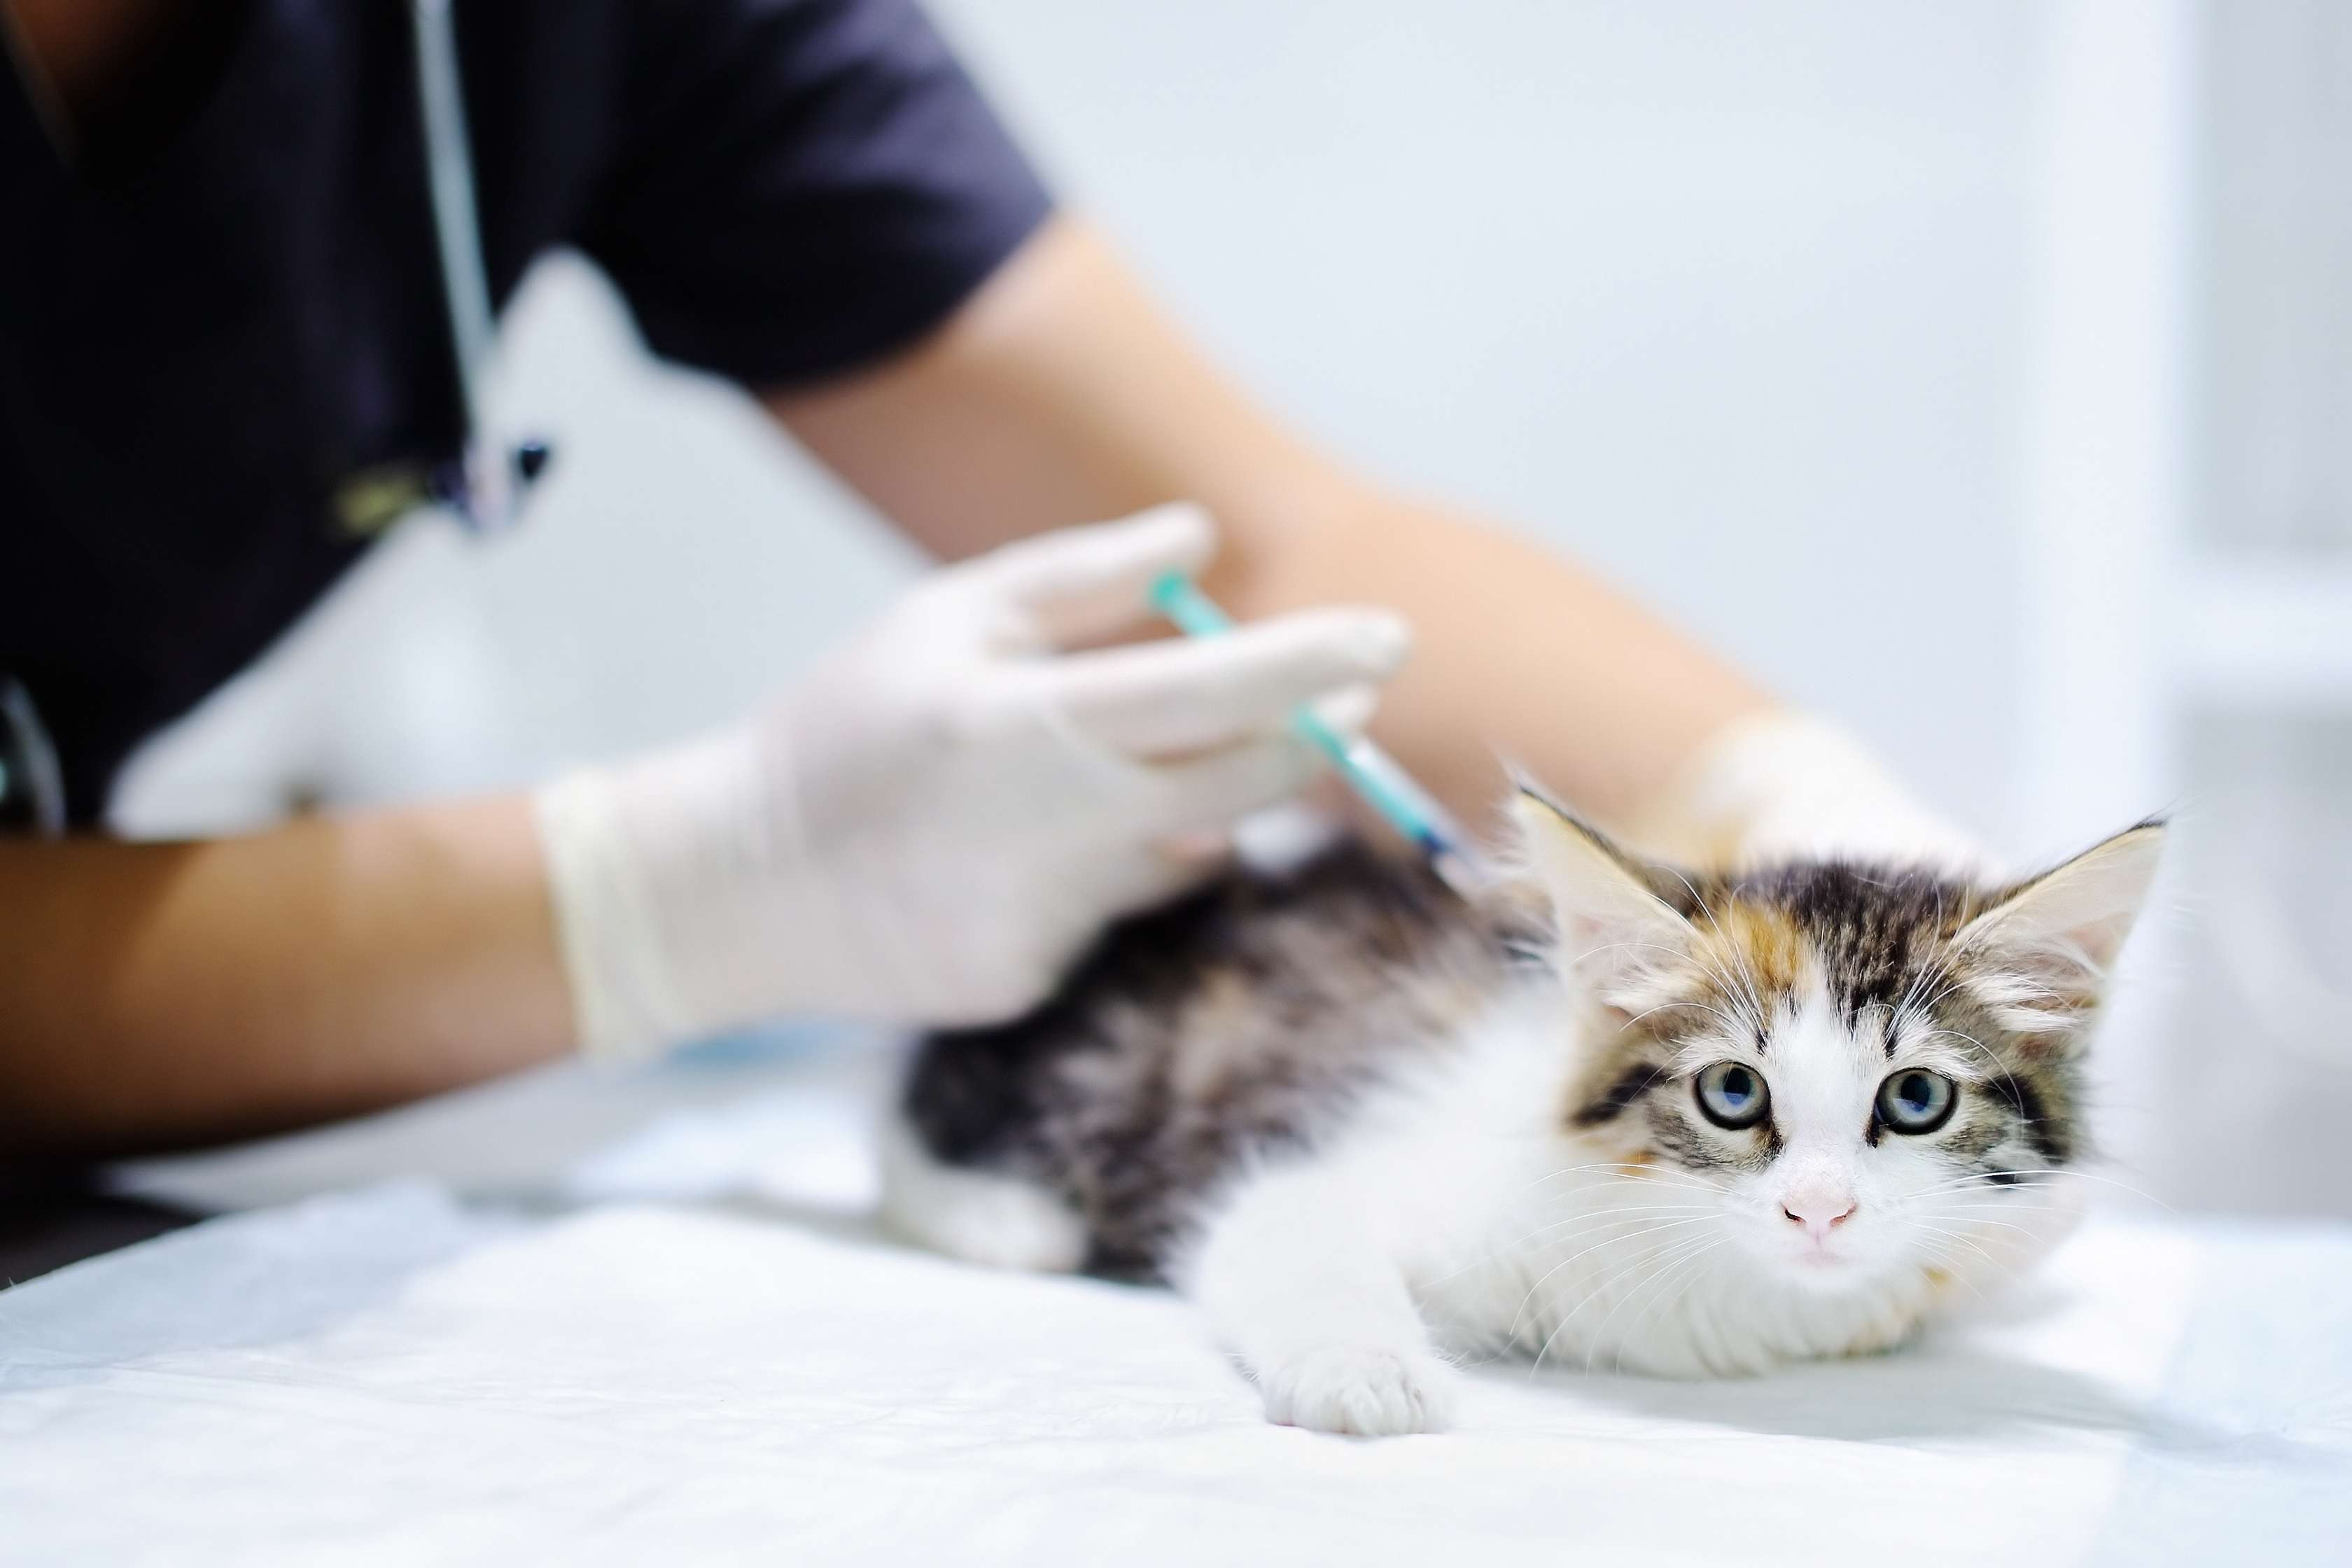 Tierarzt verabreicht Katze auf Behandlungstisch eine Injektion